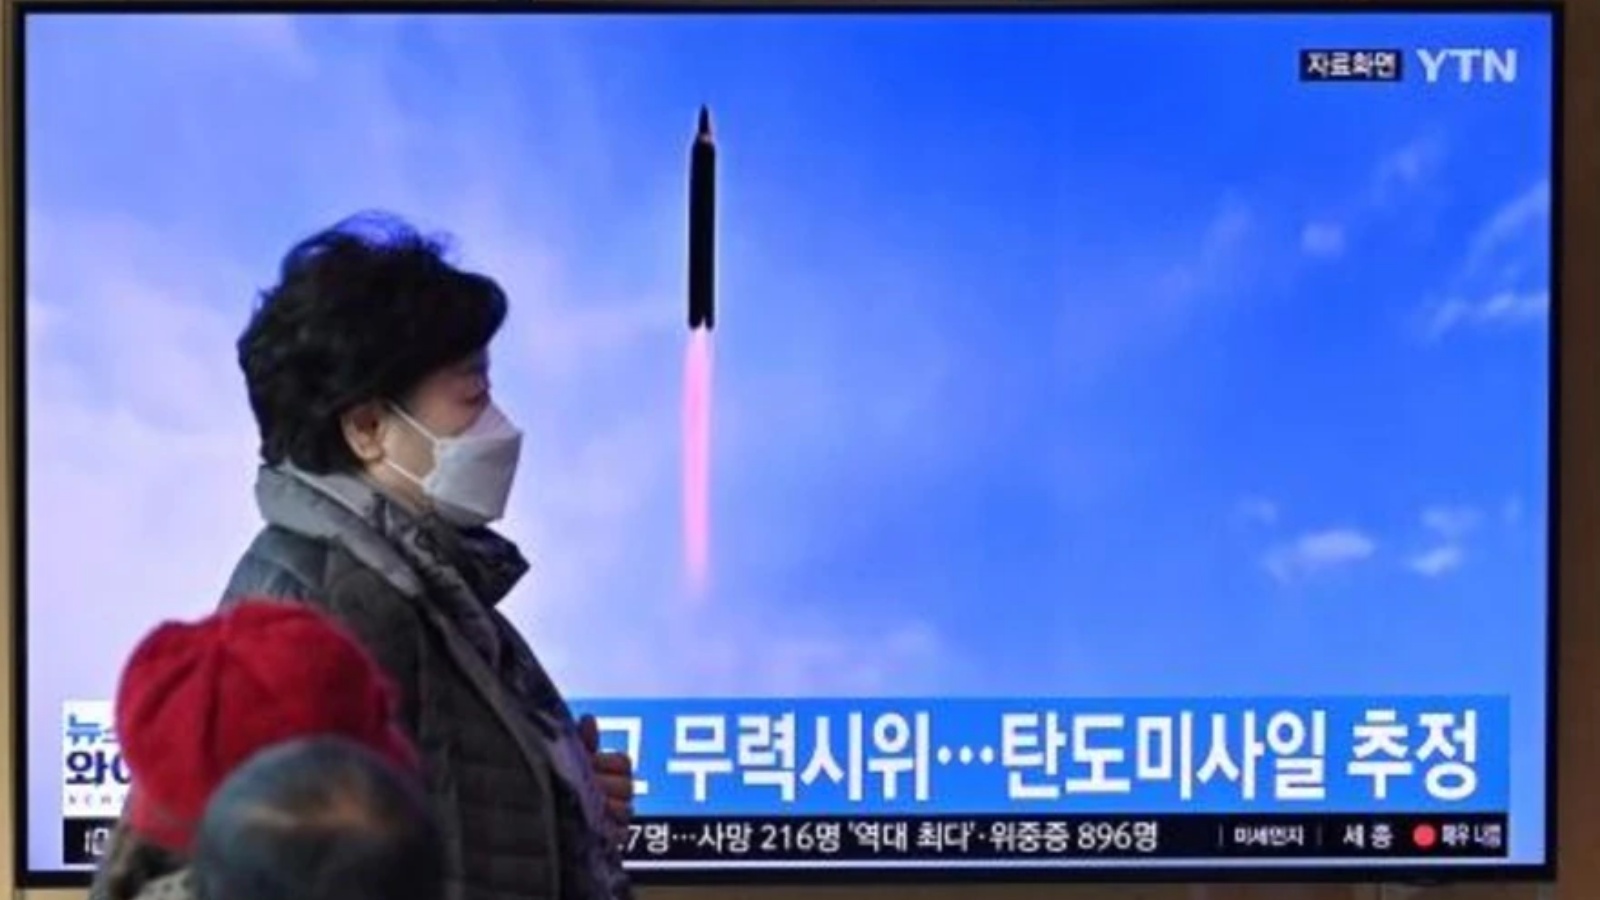 شاشة تلفاز تظهر لقطة من الارشيف لاختبار صاروخي كوري شمالي في سيول بتاريخ 5 مارس 2022 